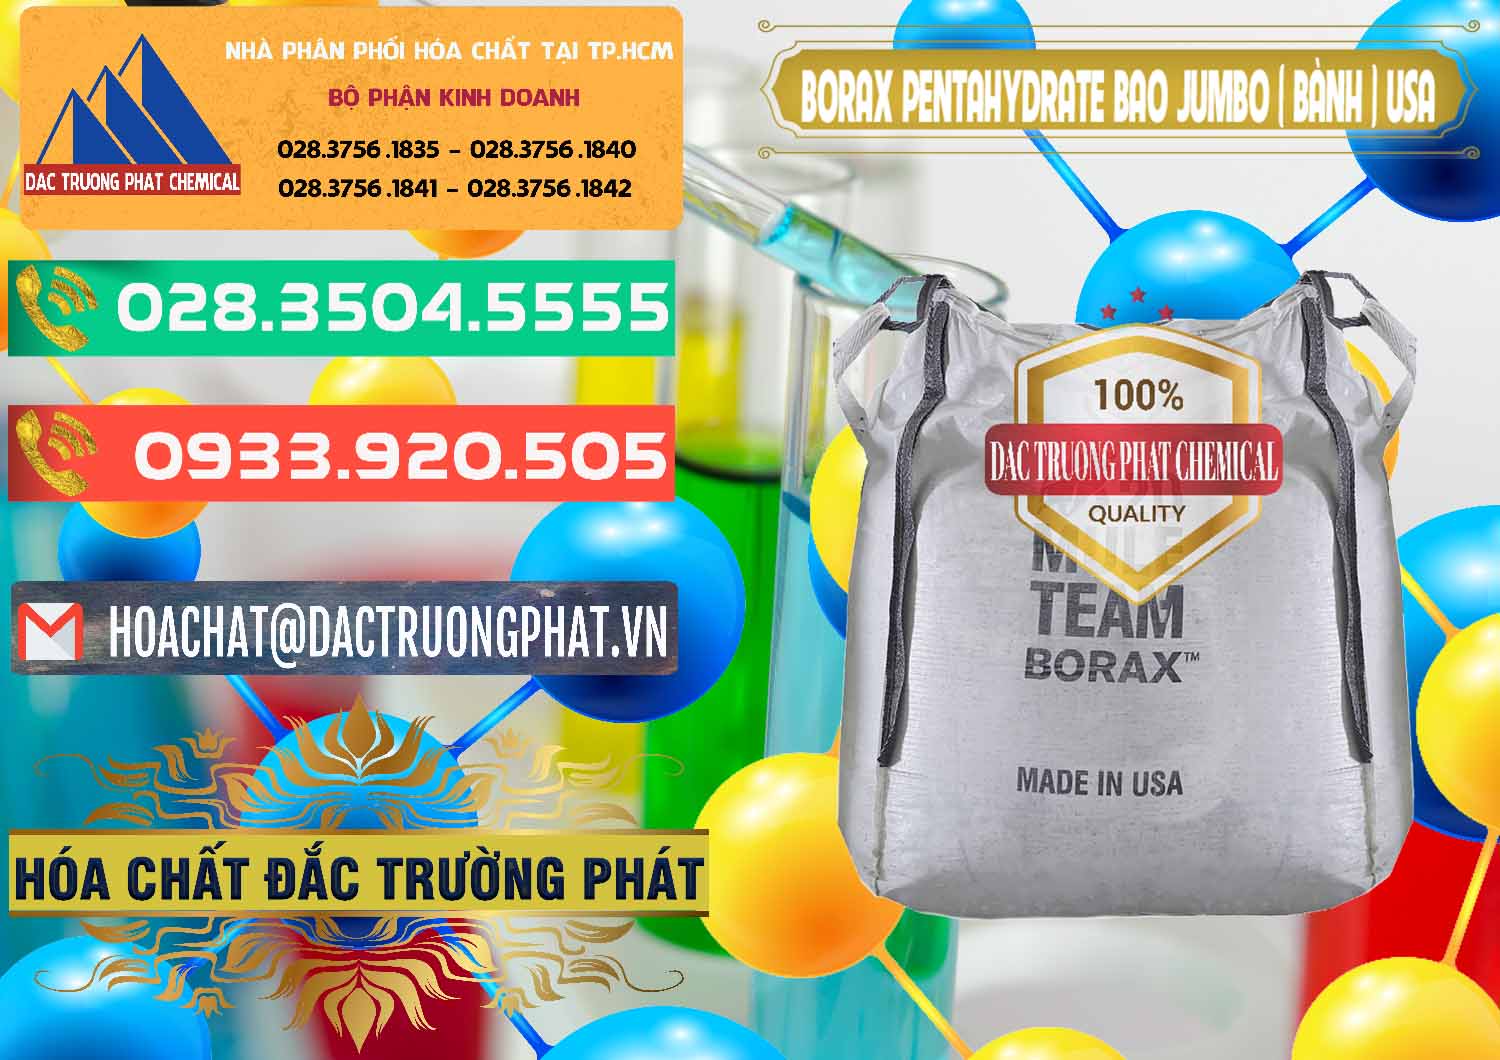 Nơi chuyên kinh doanh - bán Borax Pentahydrate Bao Jumbo ( Bành ) Mule 20 Team Mỹ Usa - 0278 - Nơi chuyên nhập khẩu - phân phối hóa chất tại TP.HCM - congtyhoachat.com.vn